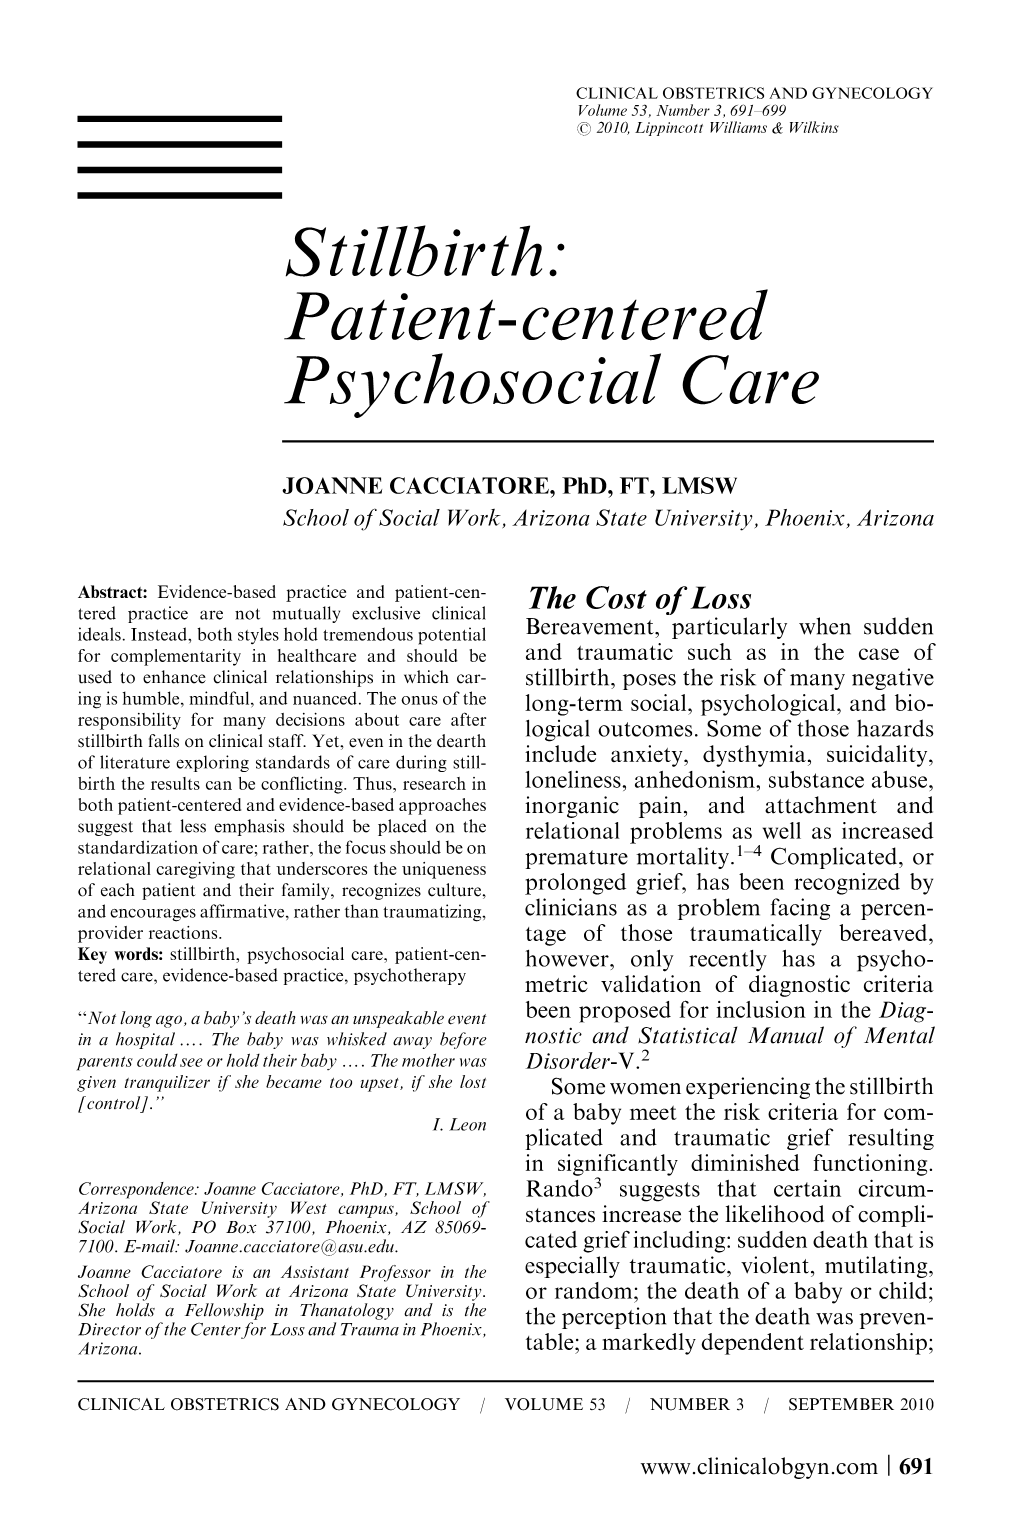 Stillbirth: Patient-Centered Psychosocial Care